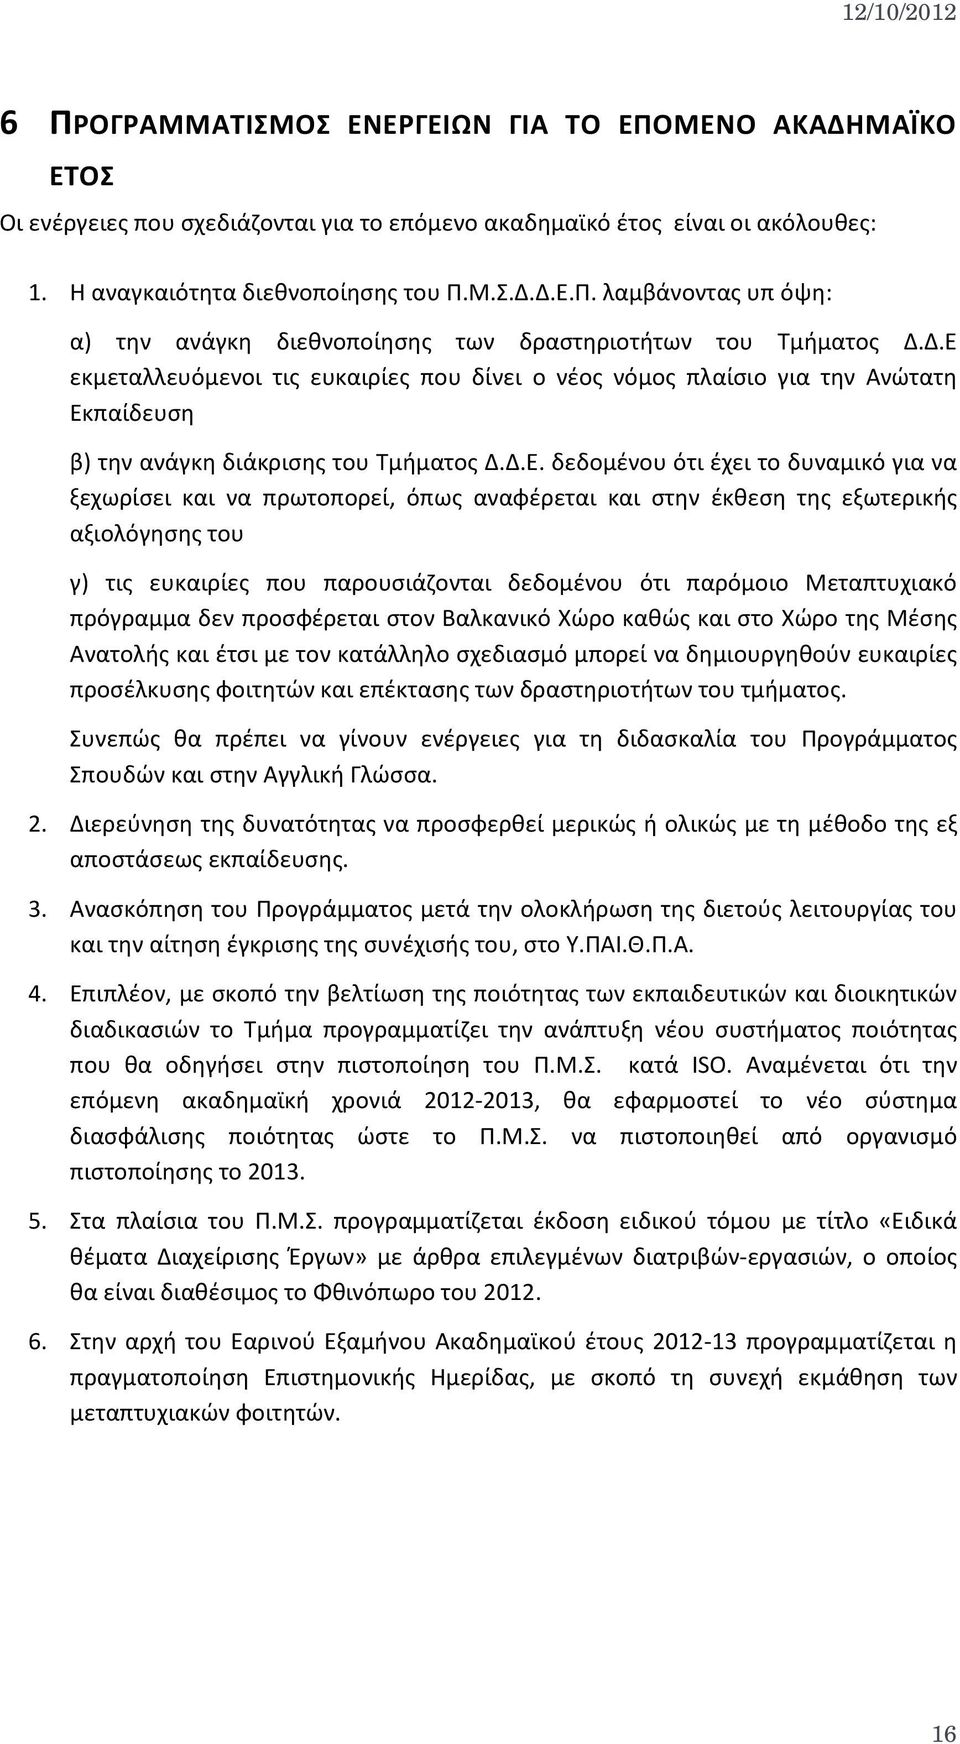 πρωτοπορεί, όπως αναφέρεται και στην έκθεση της εξωτερικής αξιολόγησης του γ) τις ευκαιρίες που παρουσιάζονται δεδομένου ότι παρόμοιο Μεταπτυχιακό πρόγραμμα δεν προσφέρεται στον Βαλκανικό Χώρο καθώς